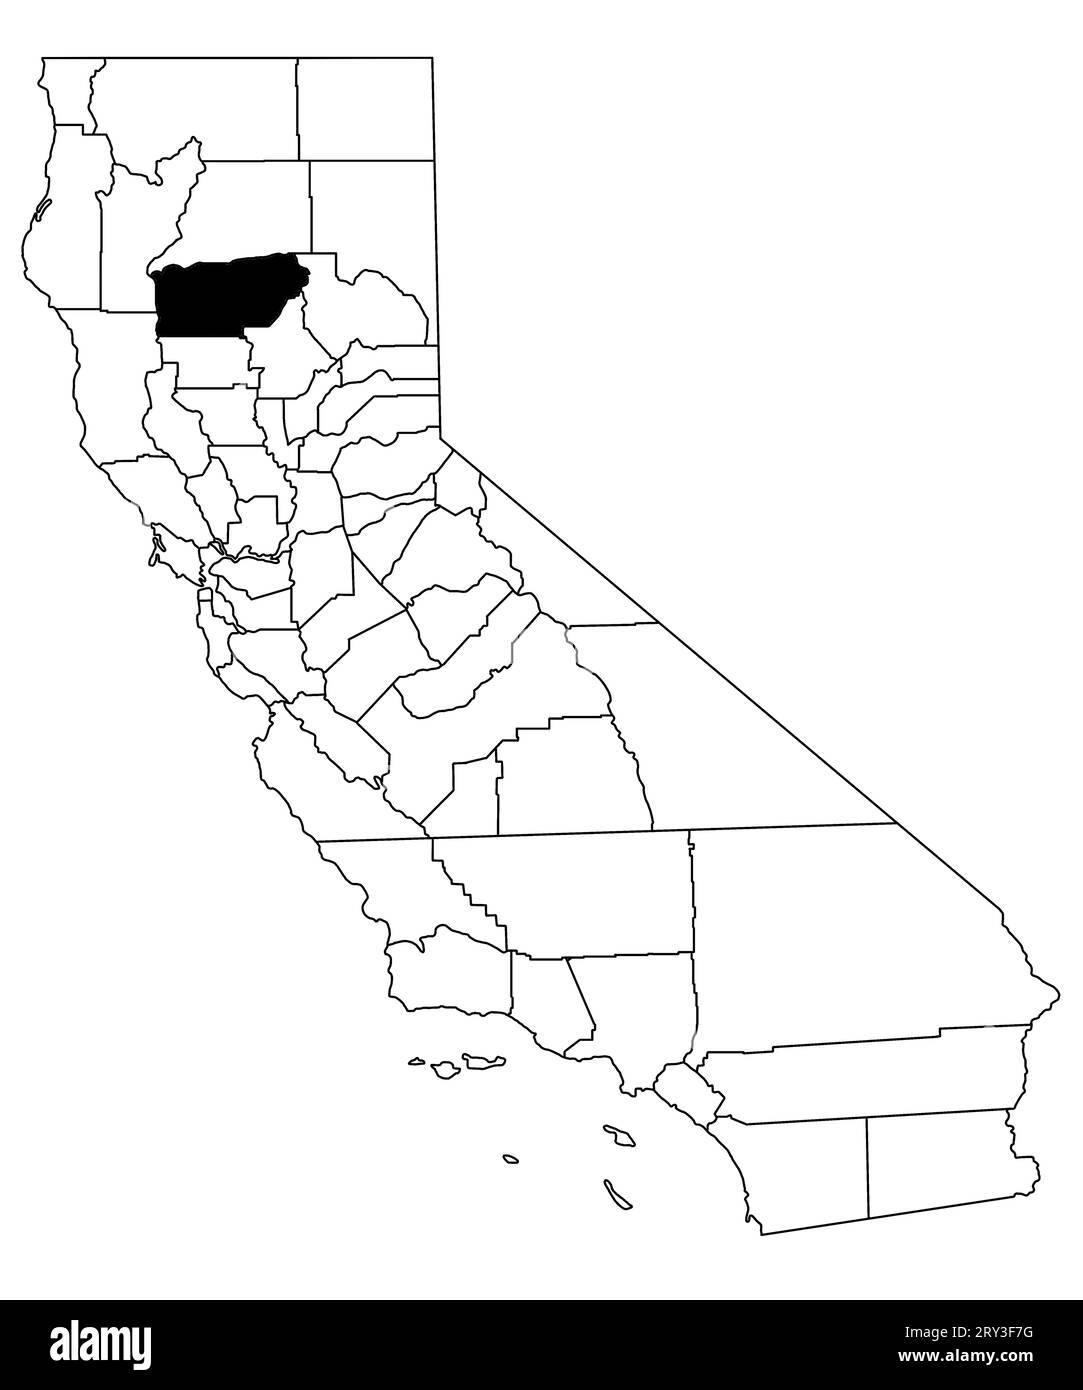 Karte von tehama County im kalifornischen Bundesstaat auf weißem Hintergrund. Single County Karte, schwarz hervorgehoben auf der kalifornischen Karte. USA, USA Stockfoto